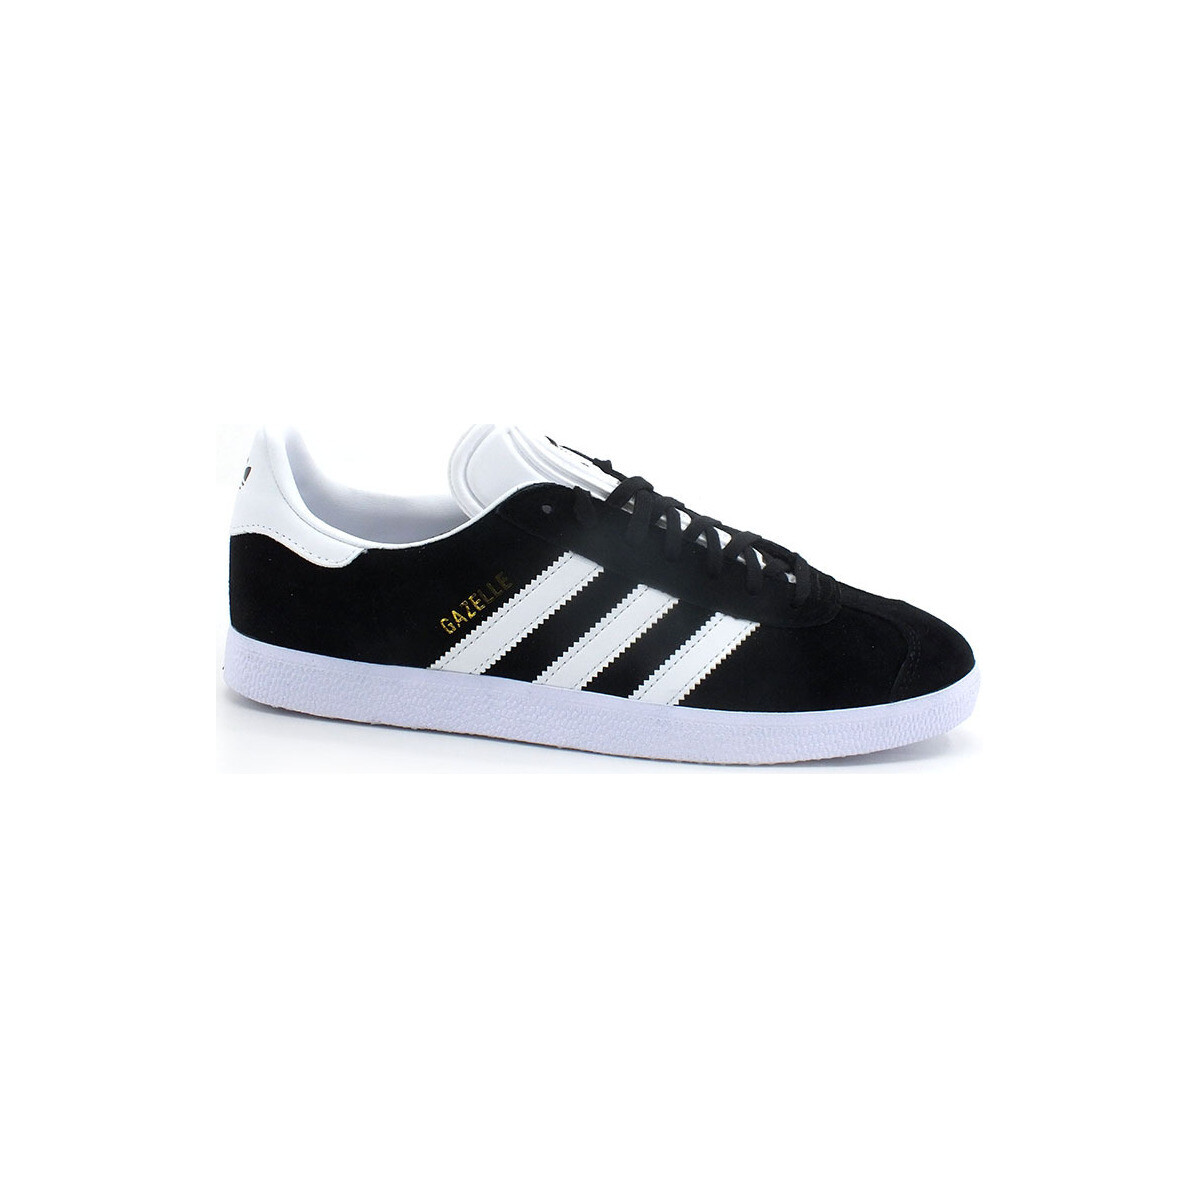 Chaussures Club Multisport adidas Originals Gazelle Sneaker Suede Black White Gold BB5476 Noir